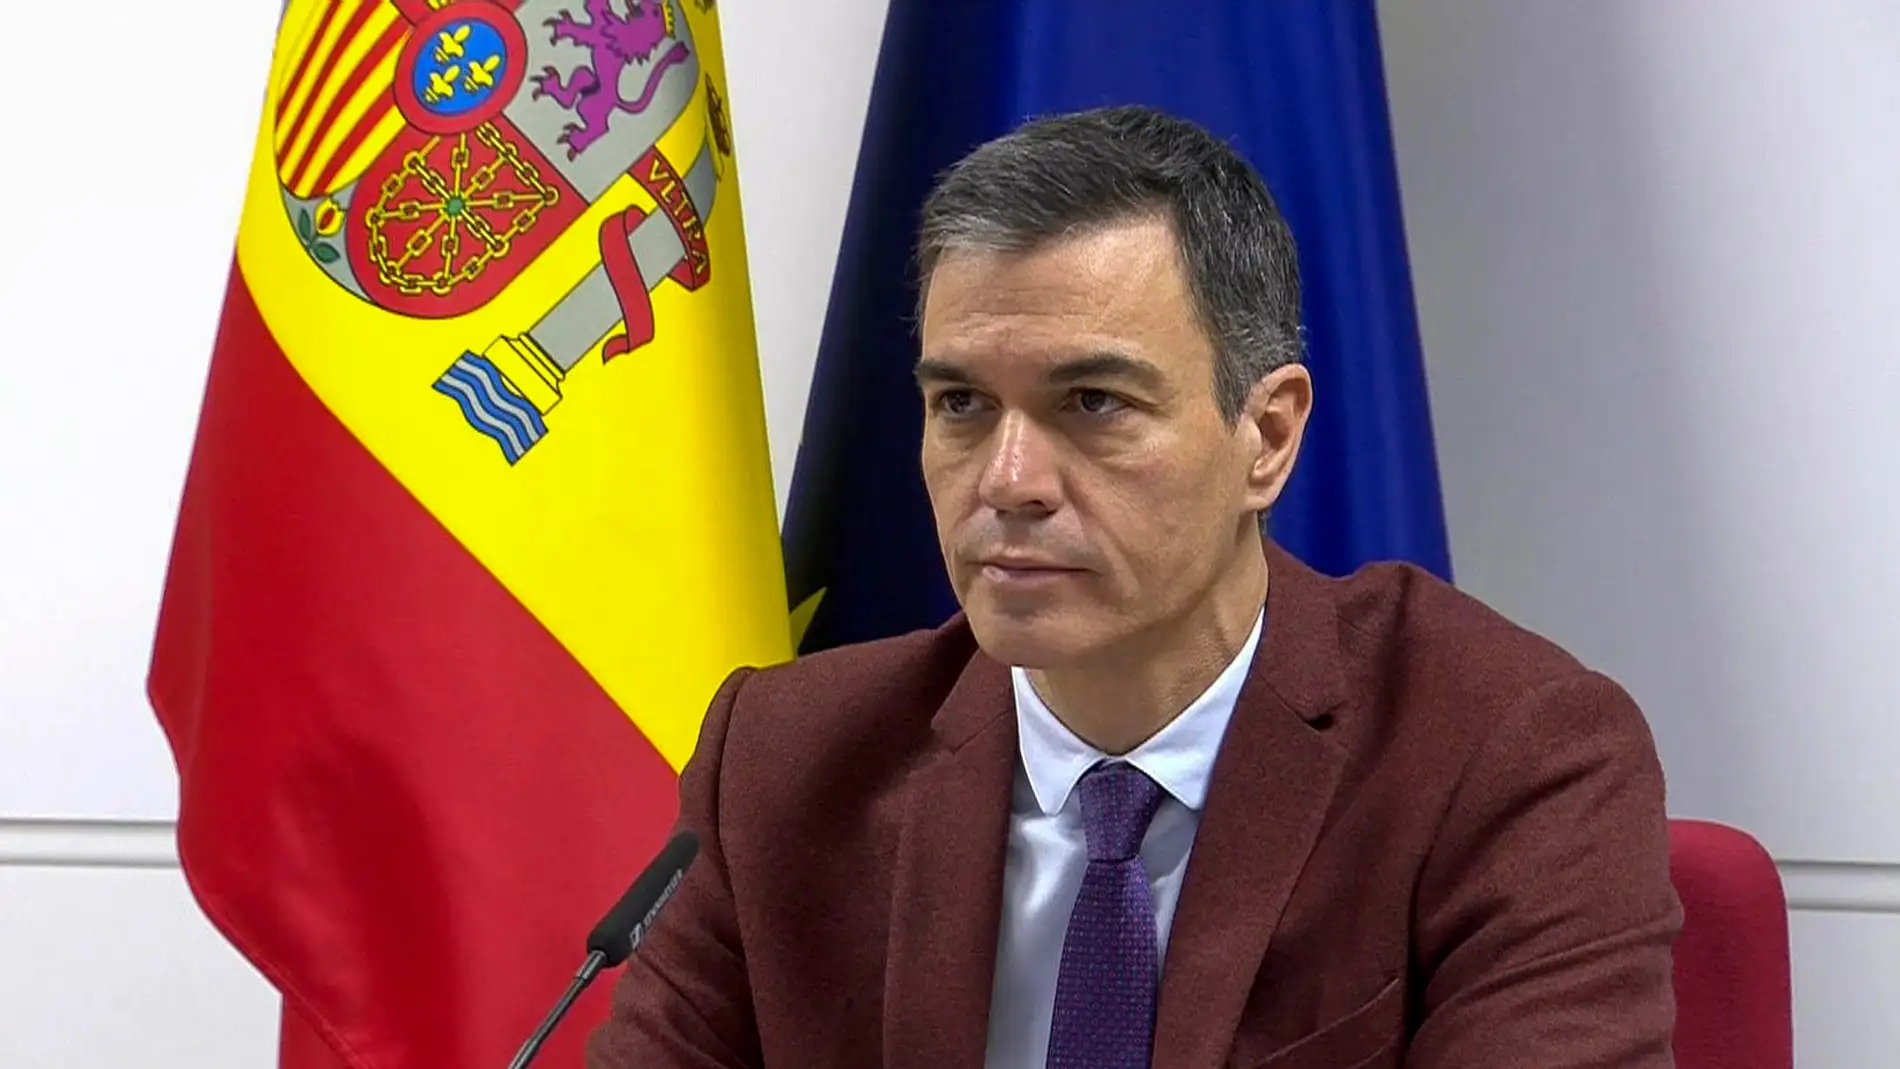 El presidente del Gobierno, Pedro Sánchez, el domingo en videoconferencia con las unidades españolas en misiones humanitarias y de paz en el exterior